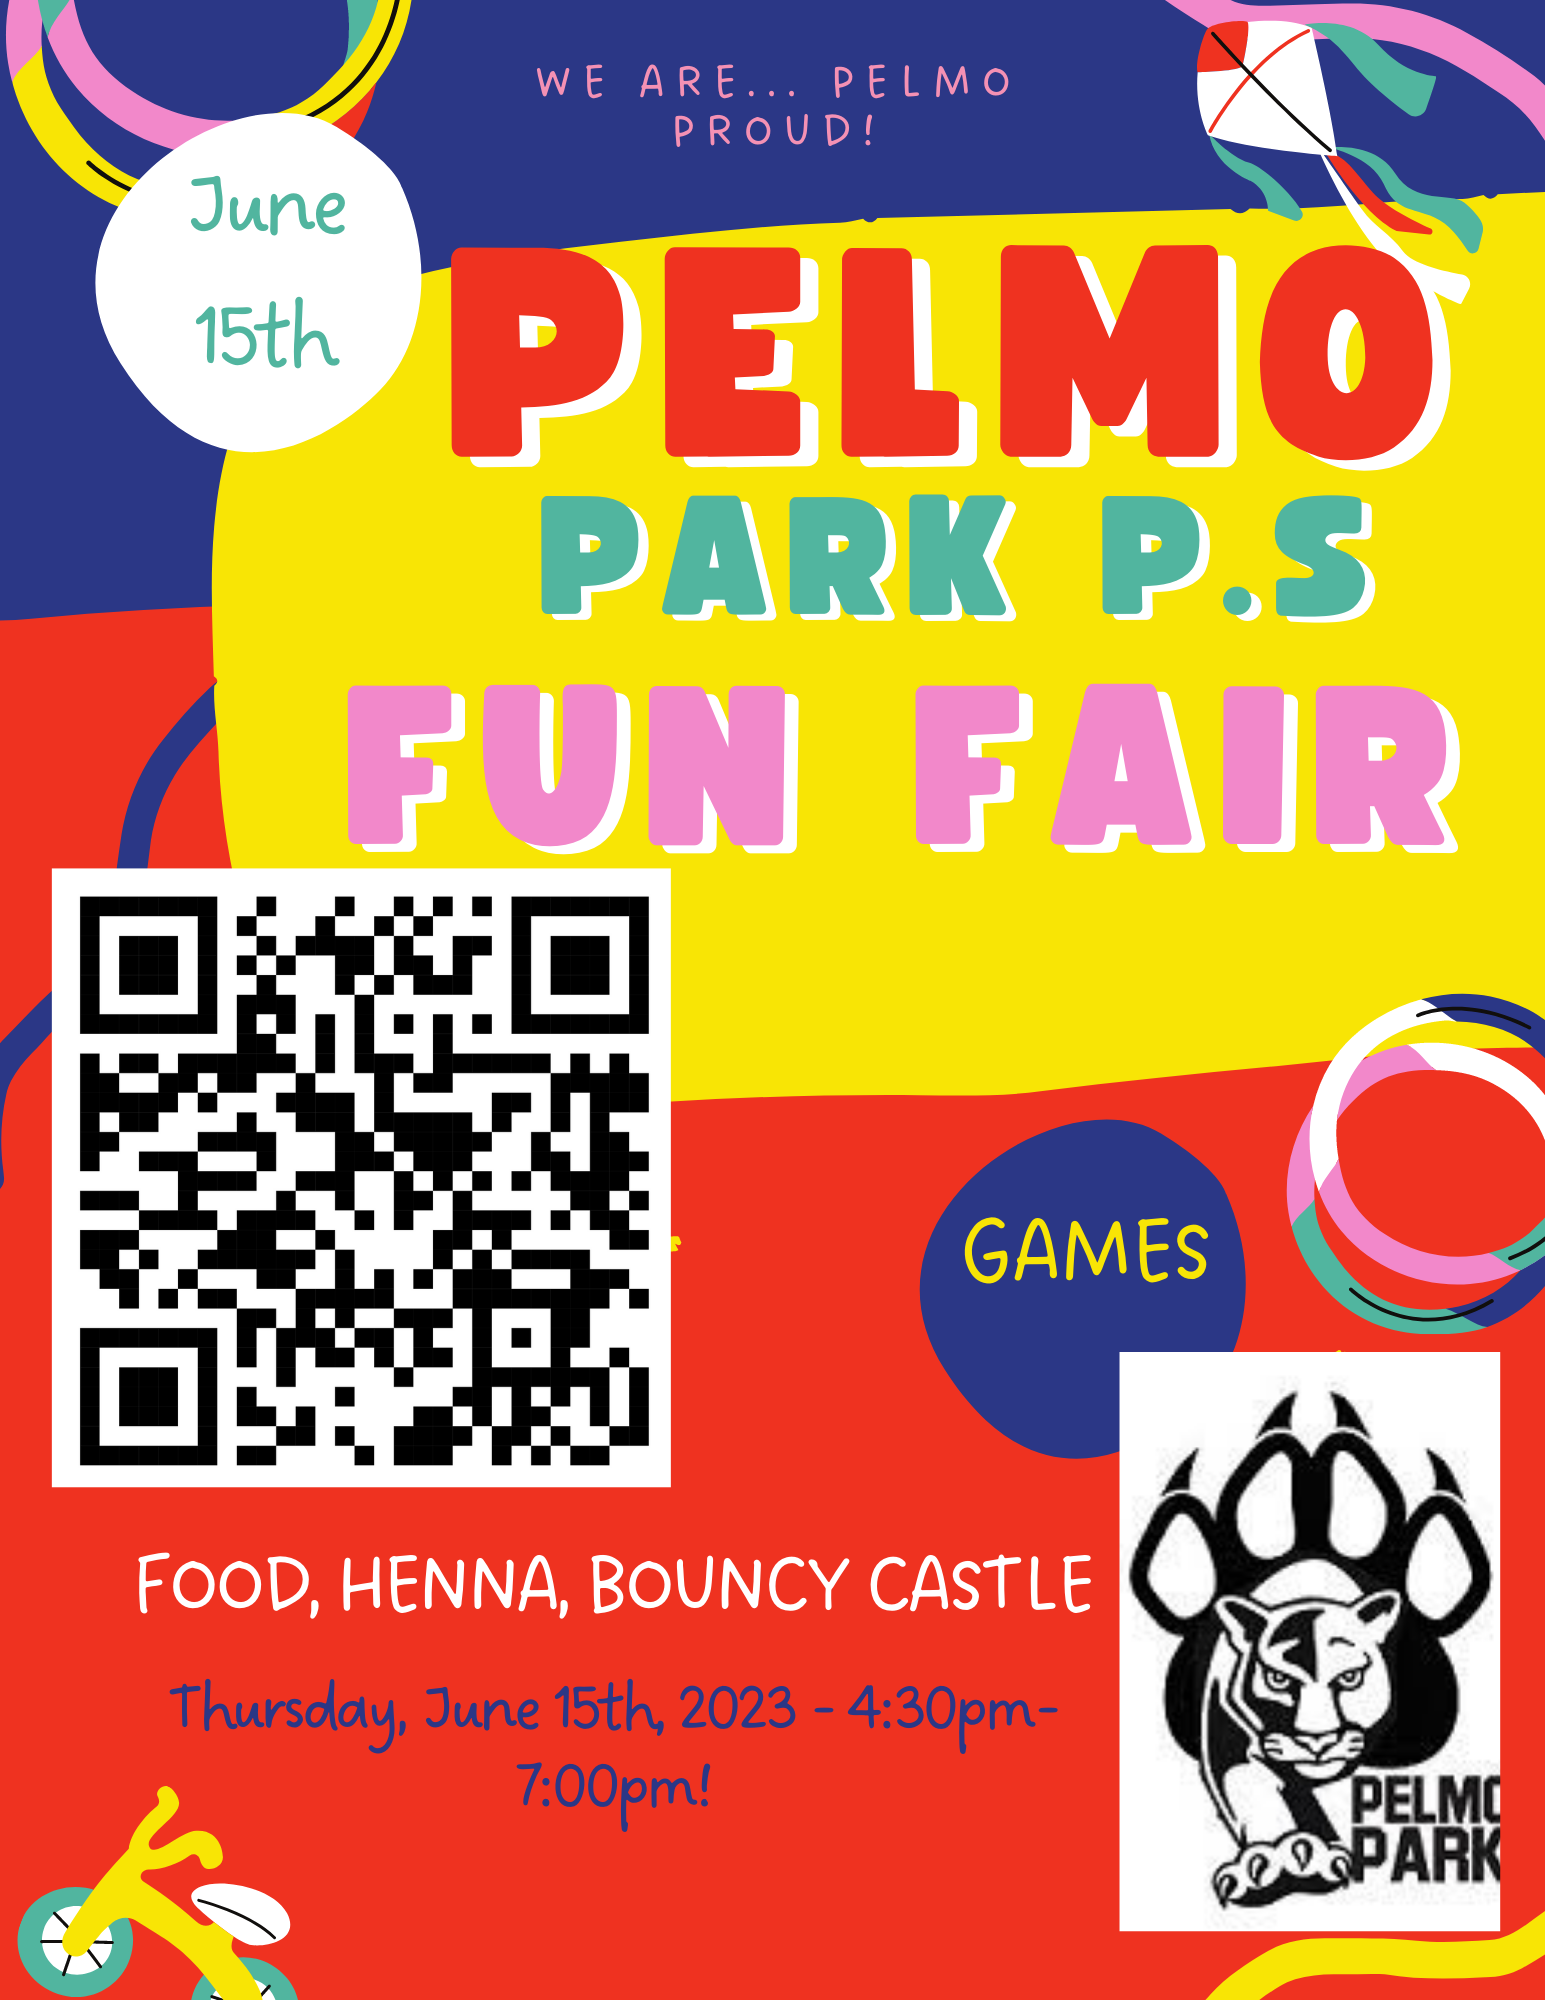 Pelmo Fun Fair
Thursday, June 15 Open Gallery